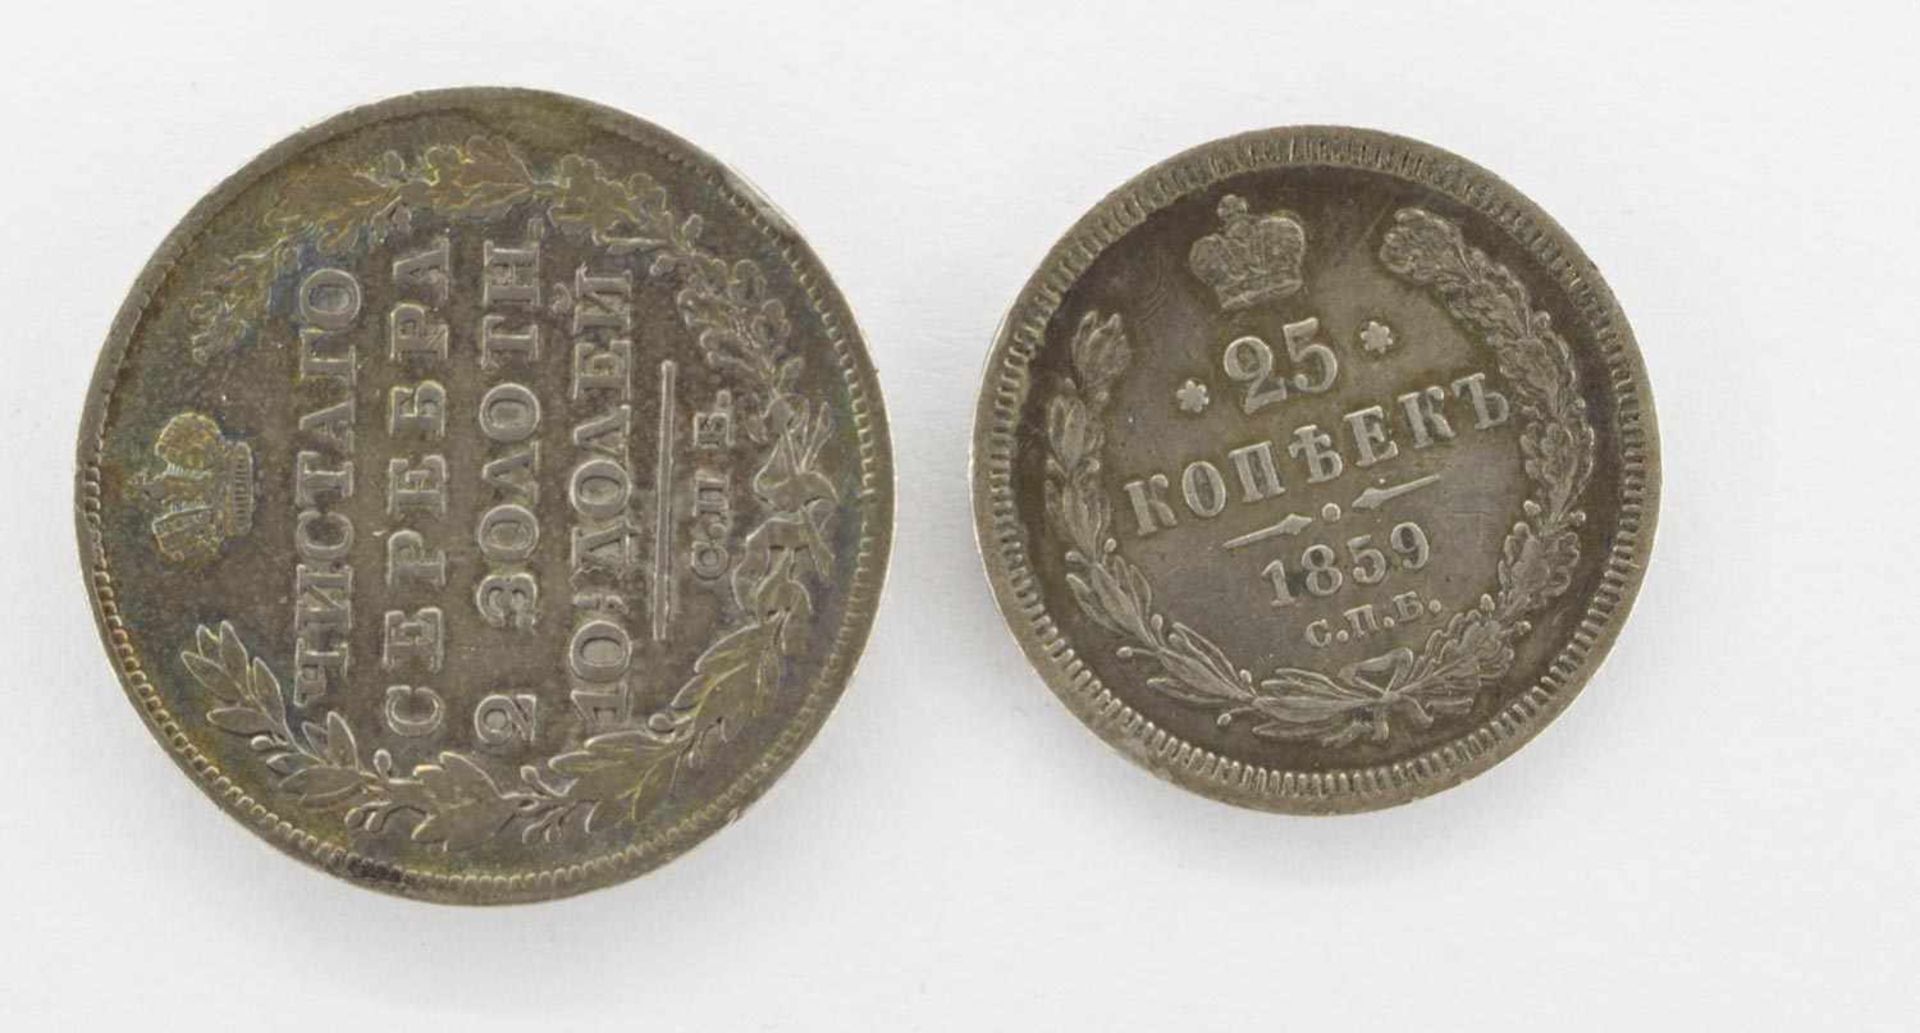 2 Münzen1/2 Rubel Rußland 1826, Silber, s/ 25 Kopeken Rußland 1859, Silber, ss+ - Bild 2 aus 2